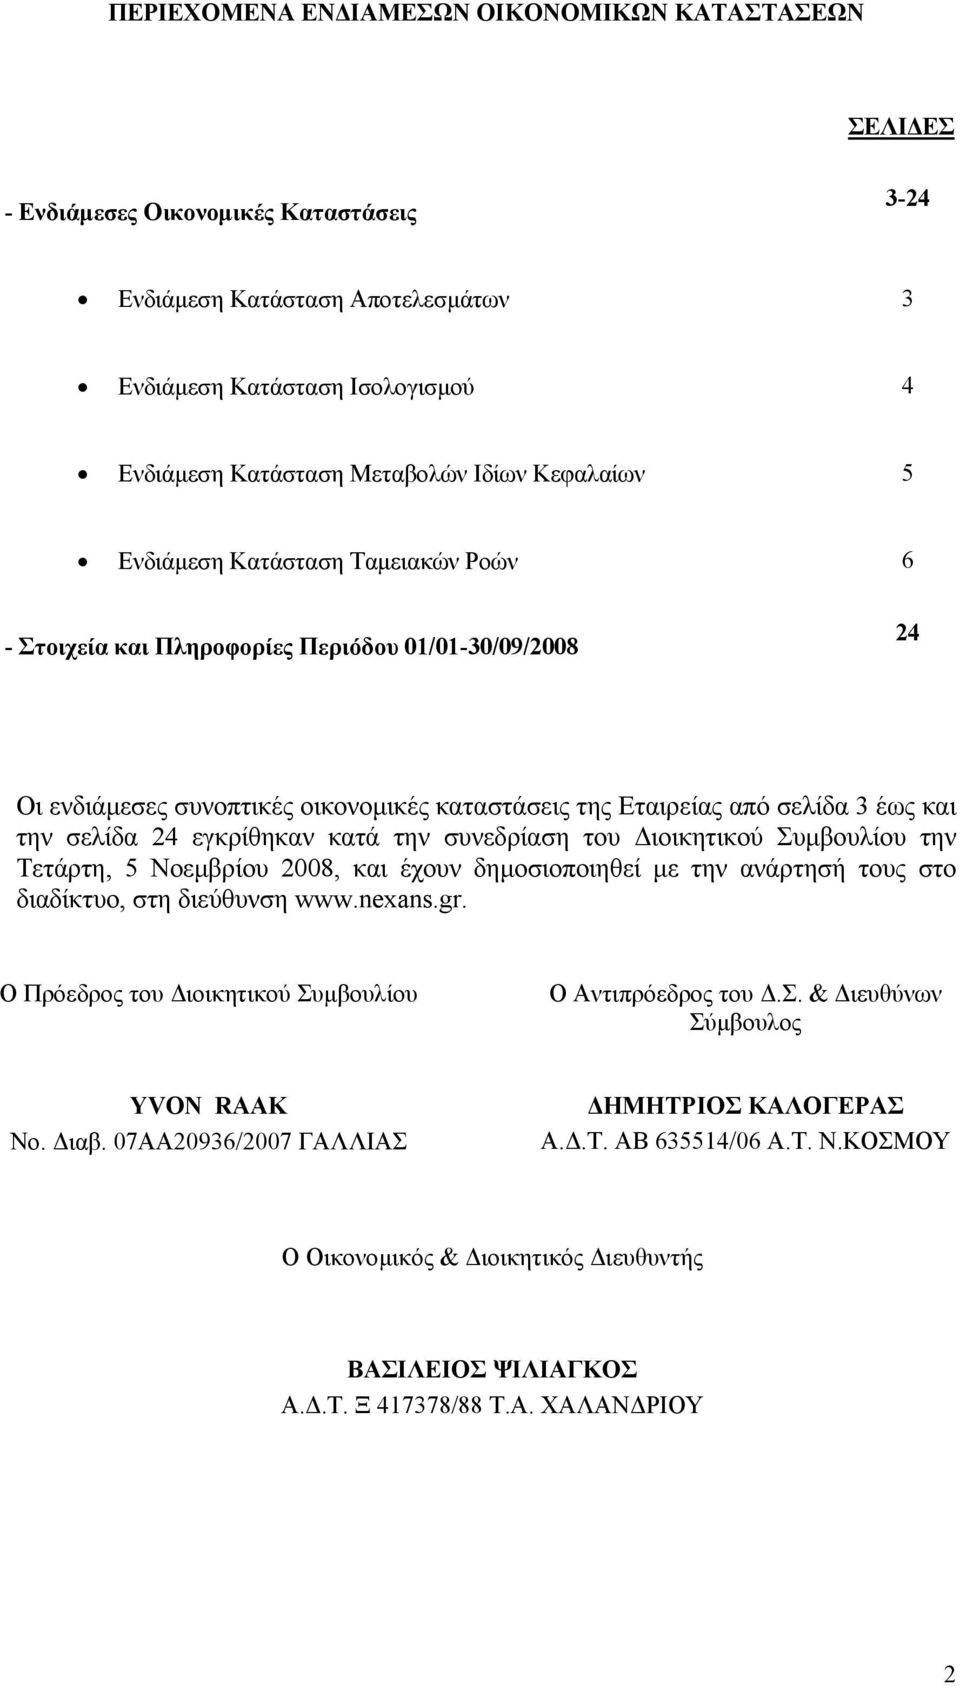 σελίδα 24 εγκρίθηκαν κατά την συνεδρίαση του ιοικητικού Συµβουλίου την Τετάρτη, 5 Νοεµβρίου 2008, και έχουν δηµοσιοποιηθεί µε την ανάρτησή τους στο διαδίκτυο, στη διεύθυνση www.nexans.gr.